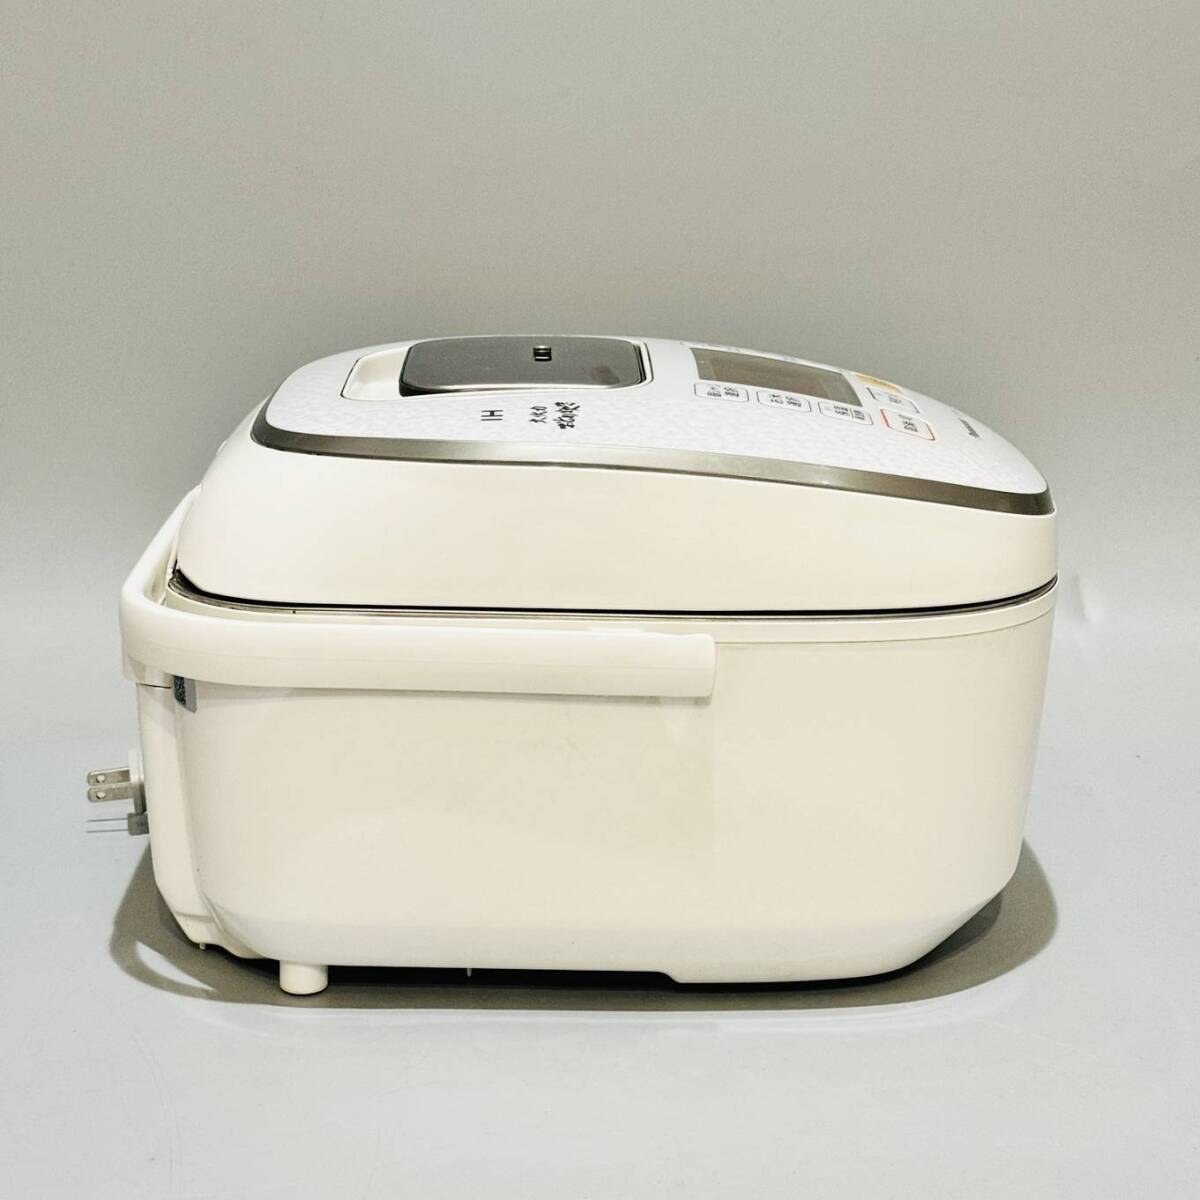 甲MJ17518 クリーニング済 動作確認済 2014年製 5.5合炊き パナソニック IHジャー炊飯器 SR-HX104 炊飯ジャー 調理機器 白の画像6